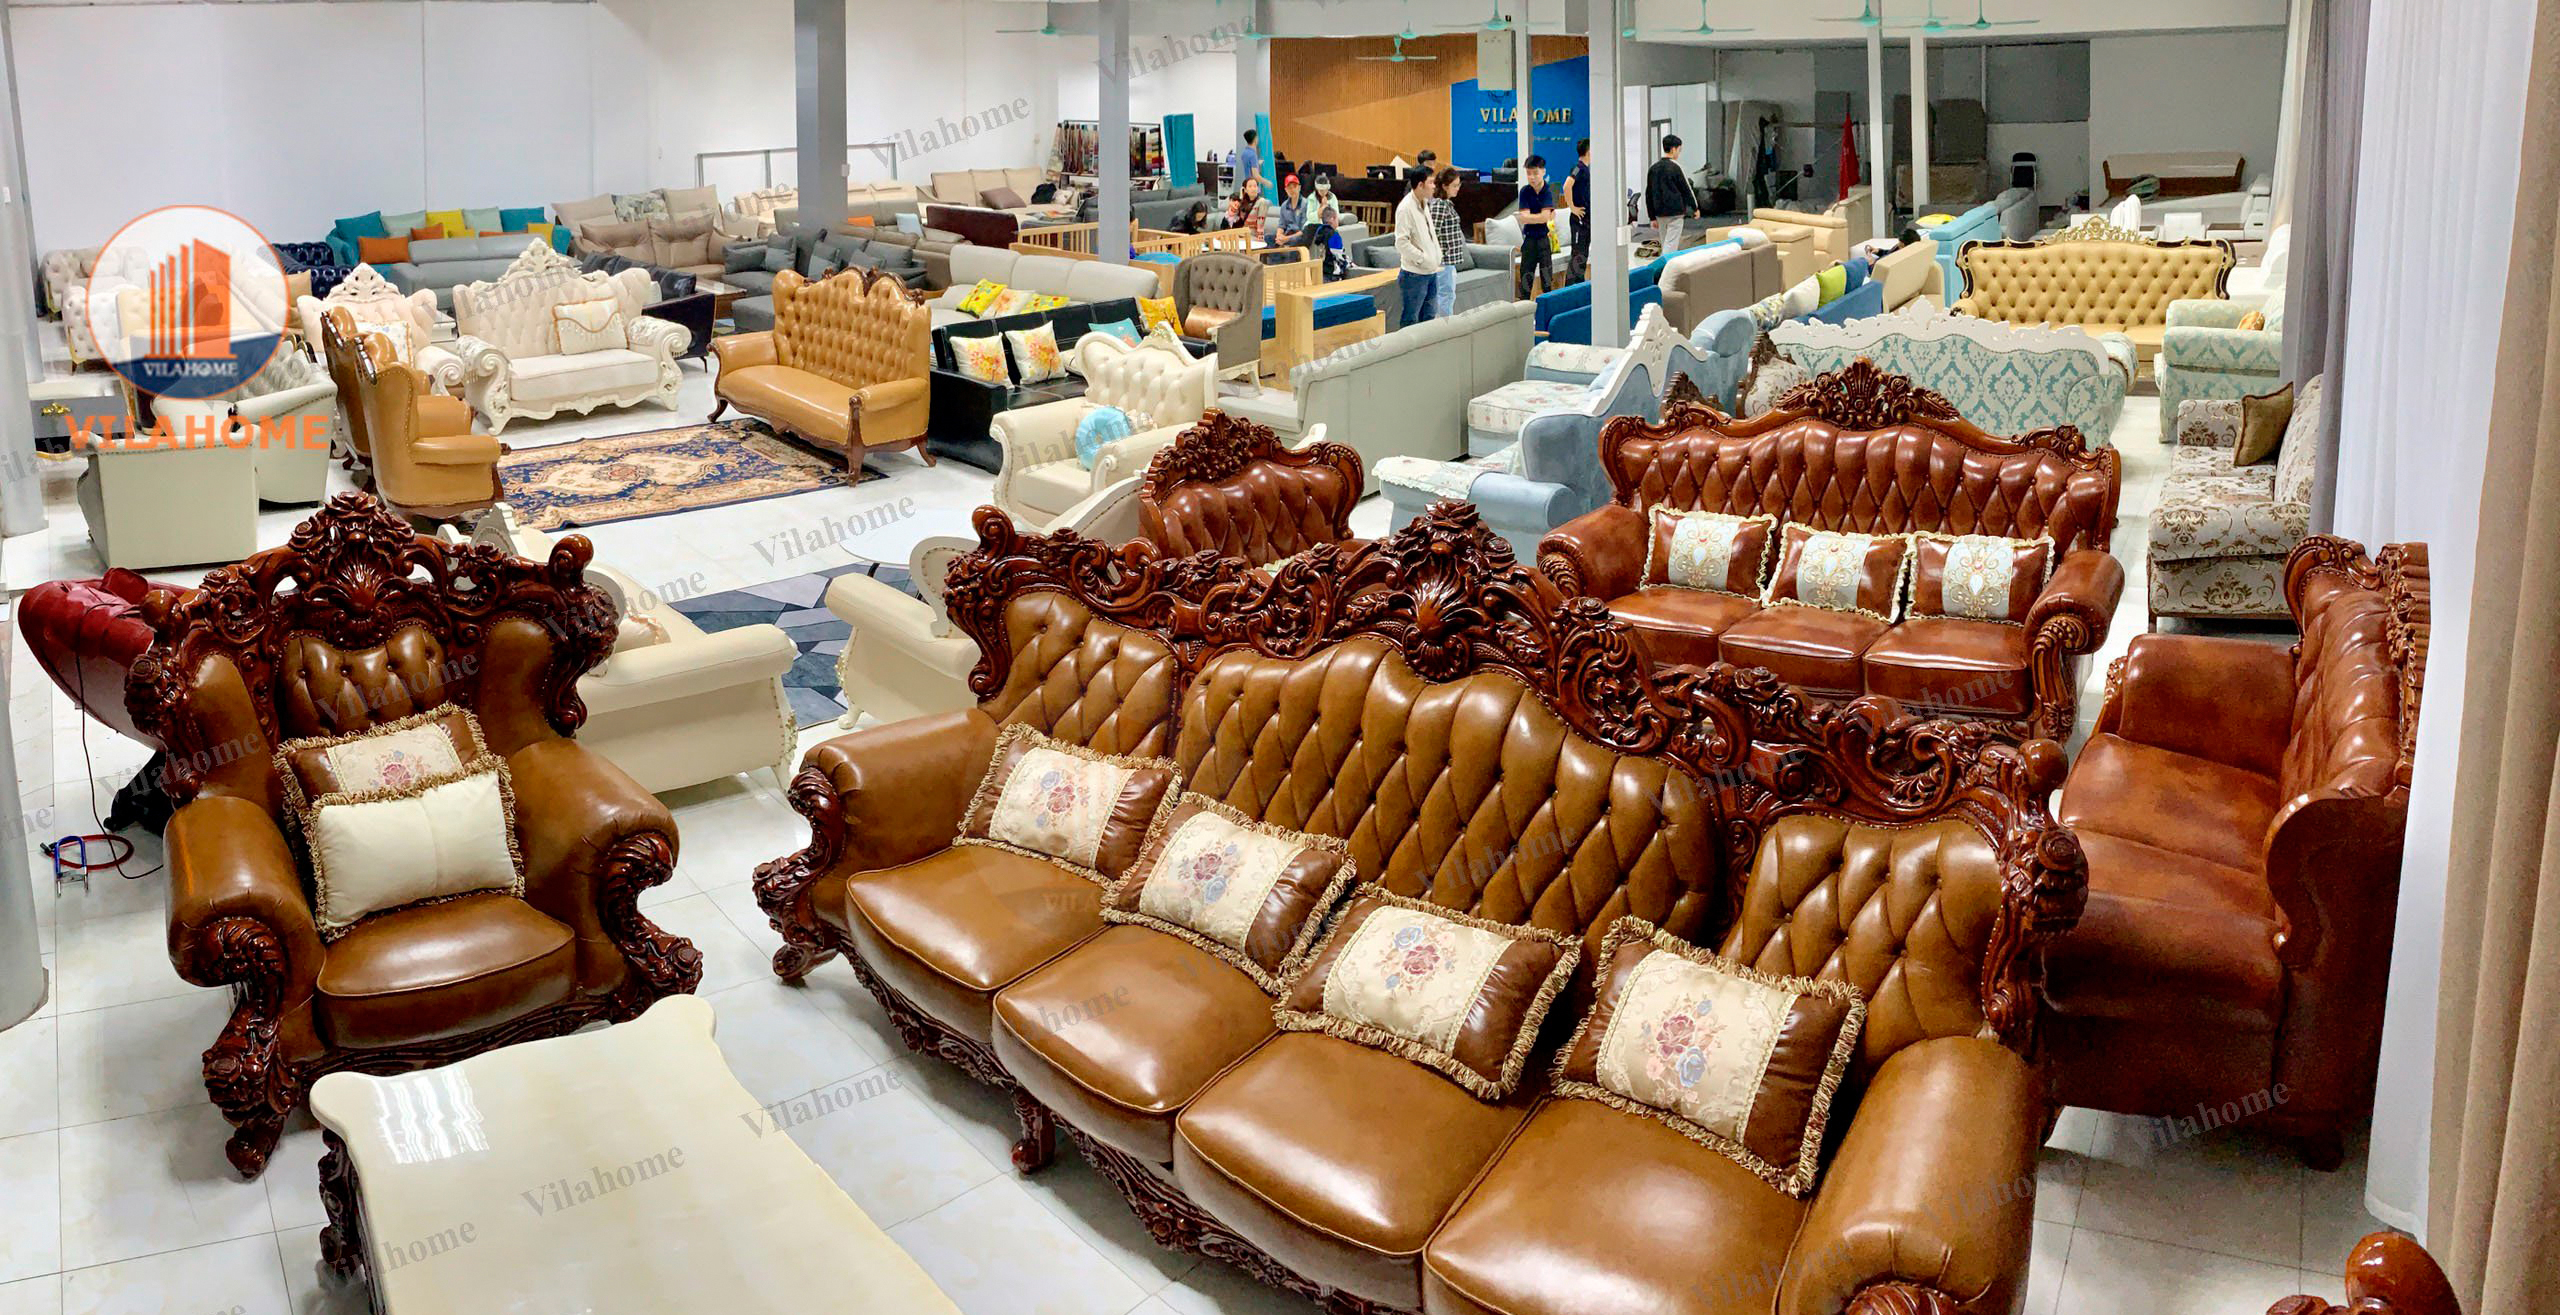 Showroom Vilahome chuyên cung cấp ghế sofa giường tại Gò Vấp 